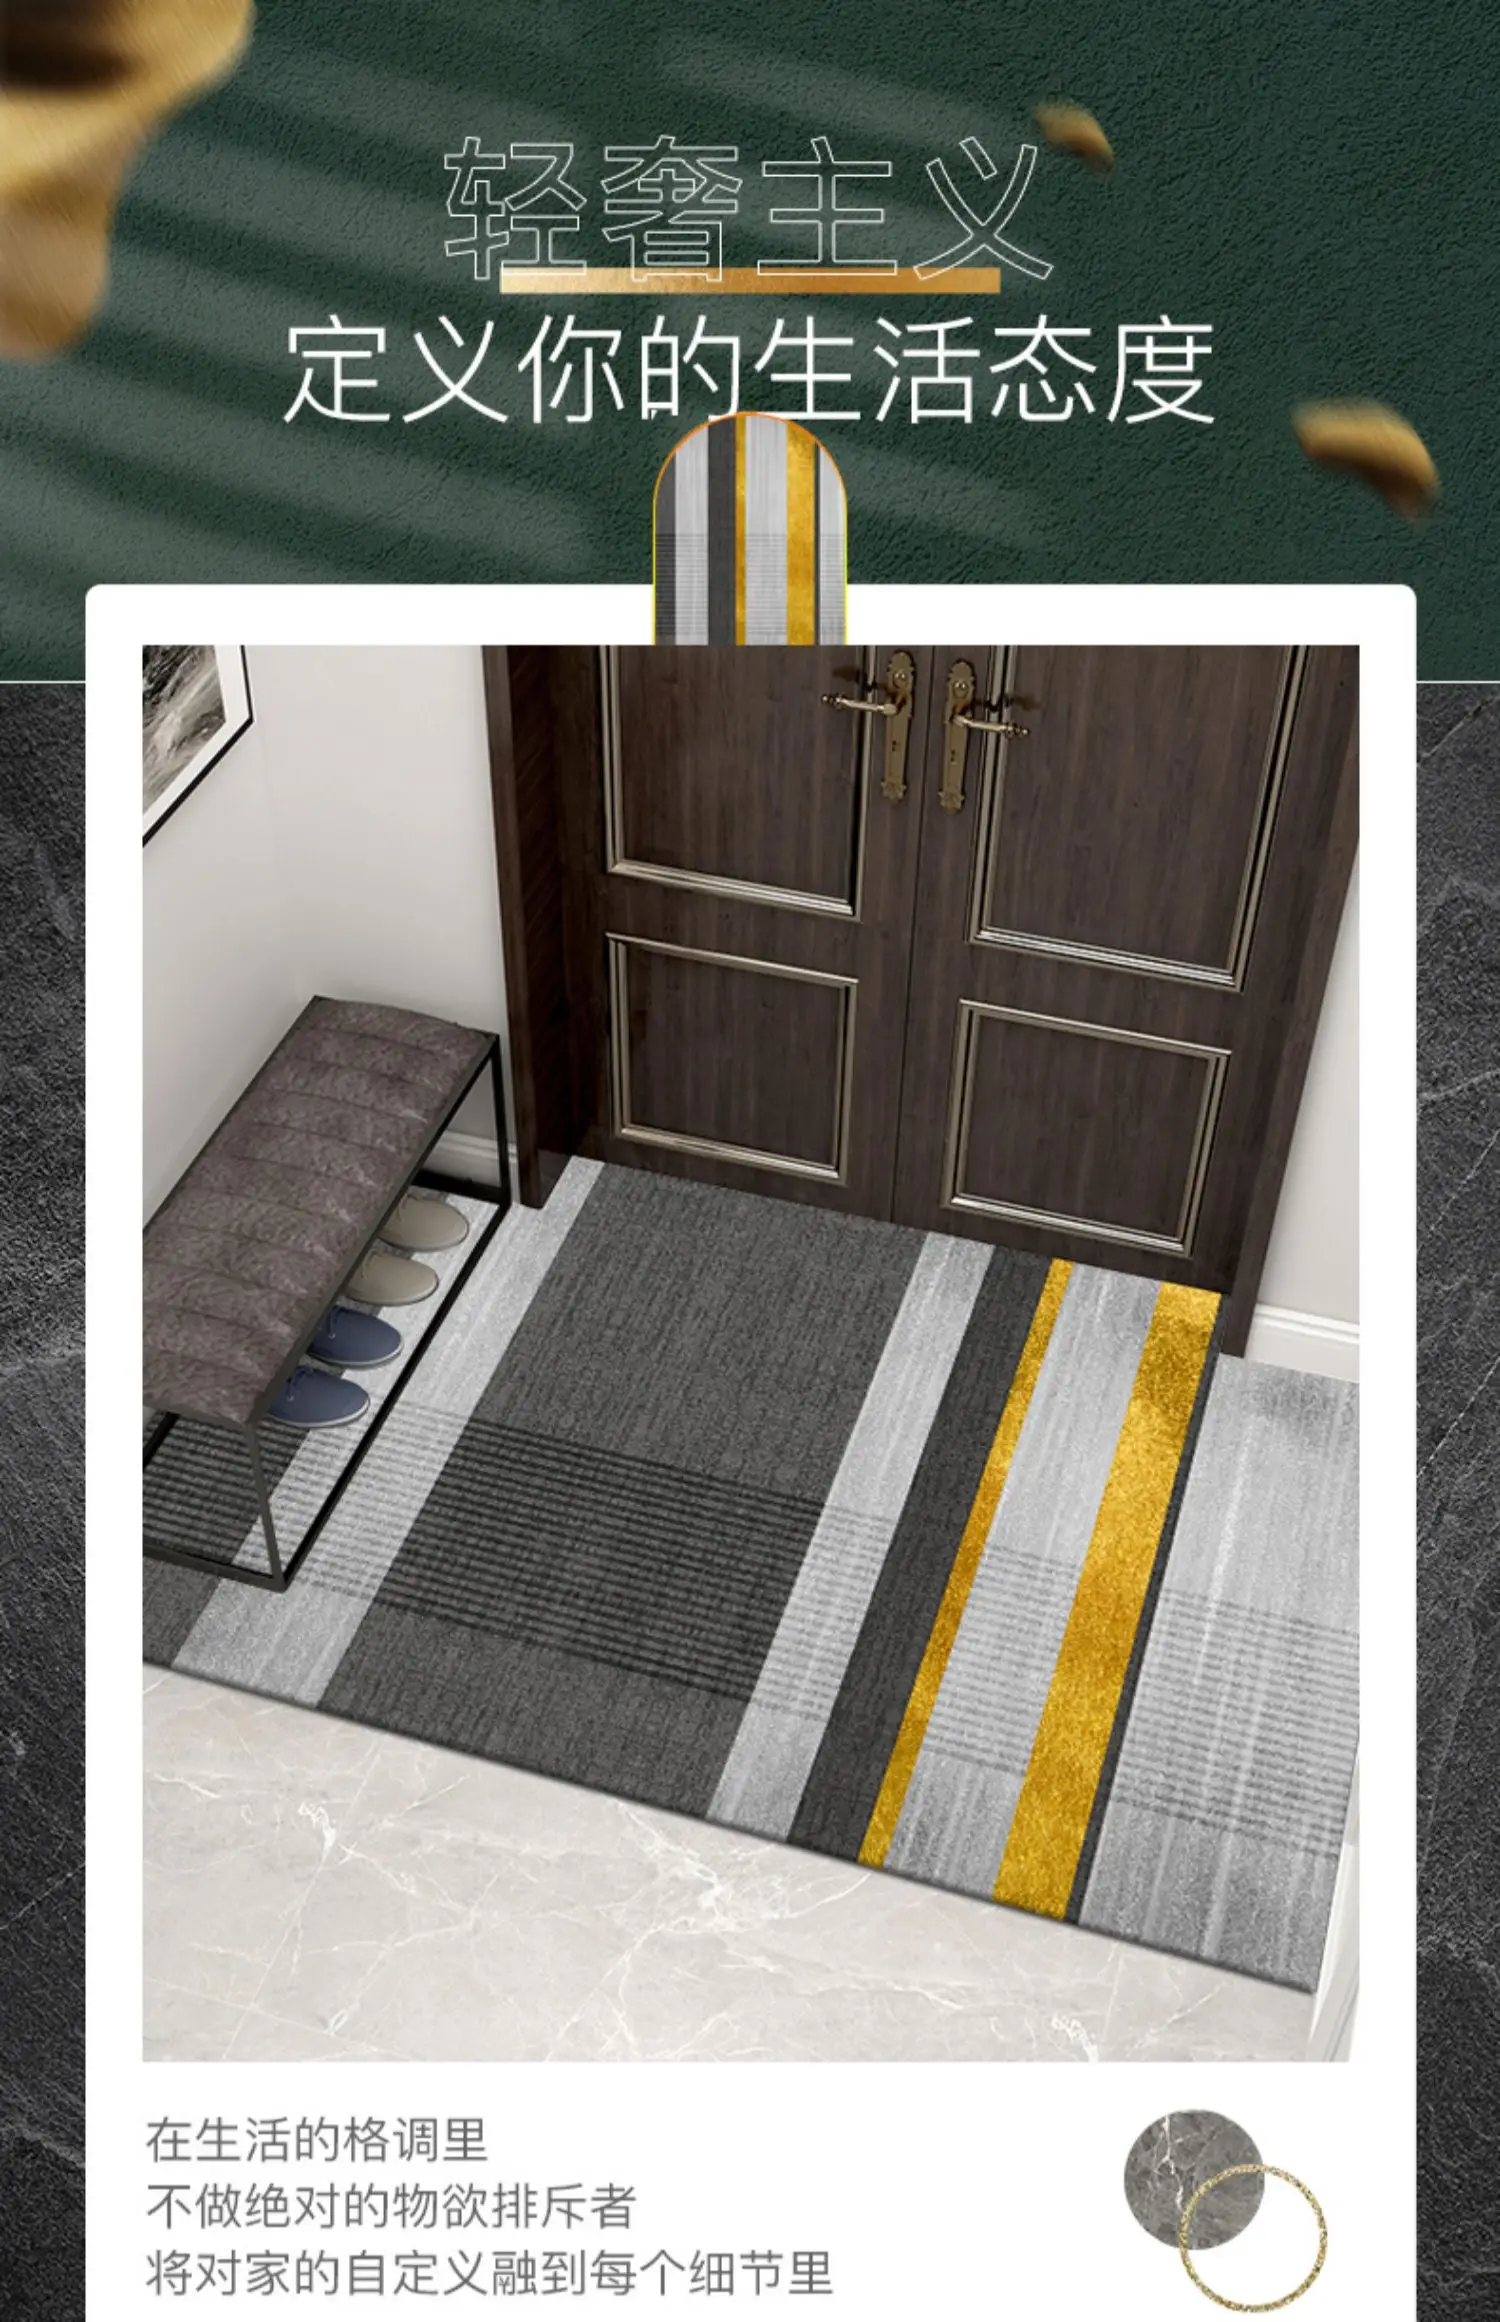 

GY0308 Doorway mat, floor mat, doormat, dirt resistant doormat, carpet, household entry, anti slip entry